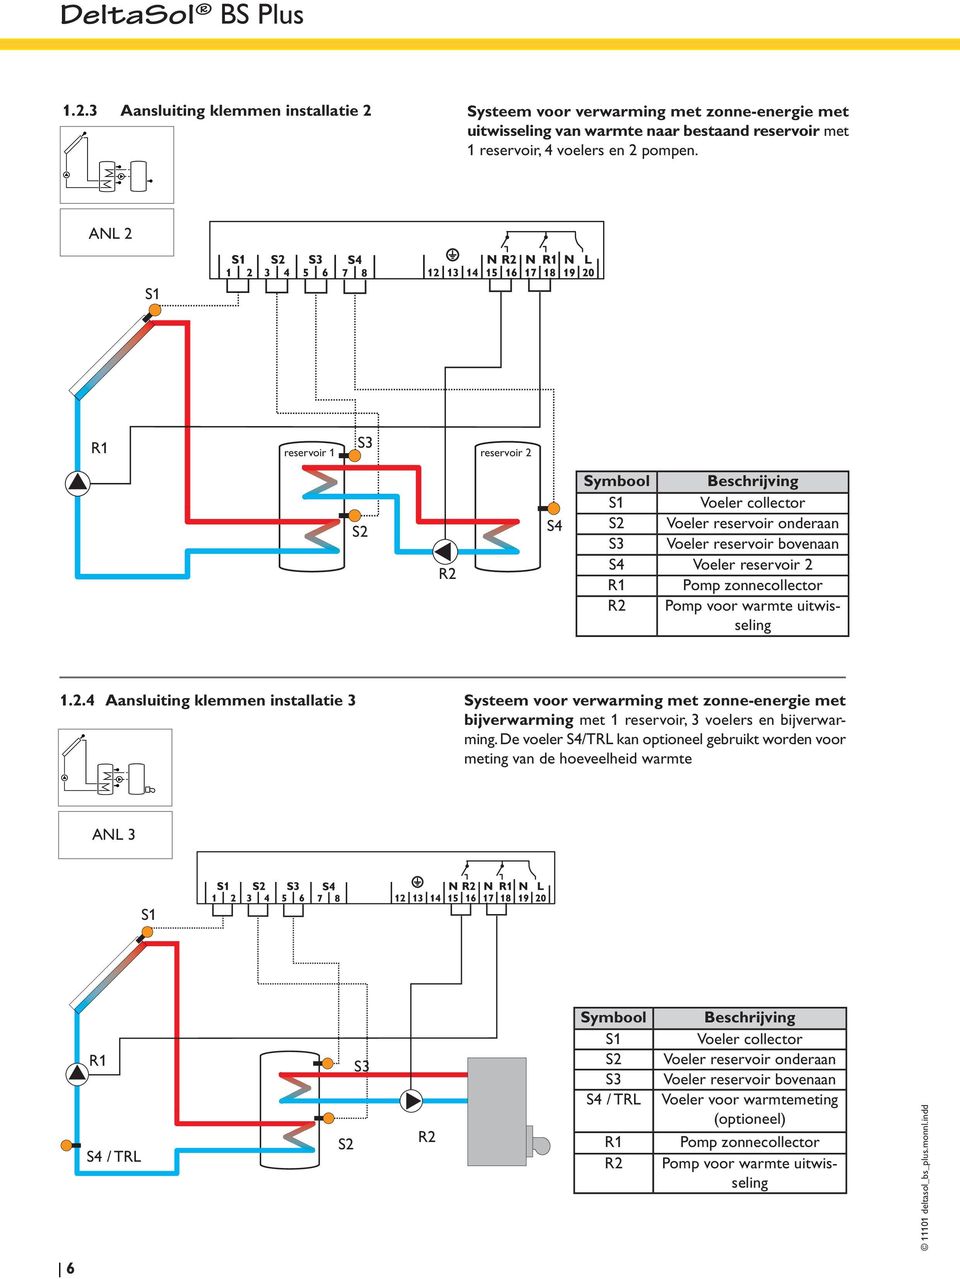 De voeler S4/TRL kan optioneel gebruikt worden voor meting van de hoeveelheid warmte ANL 3 S4 / TRL Symbool S4 / TRL Beschrijving Voeler collector Voeler reservoir onderaan Voeler reservoir bovenaan